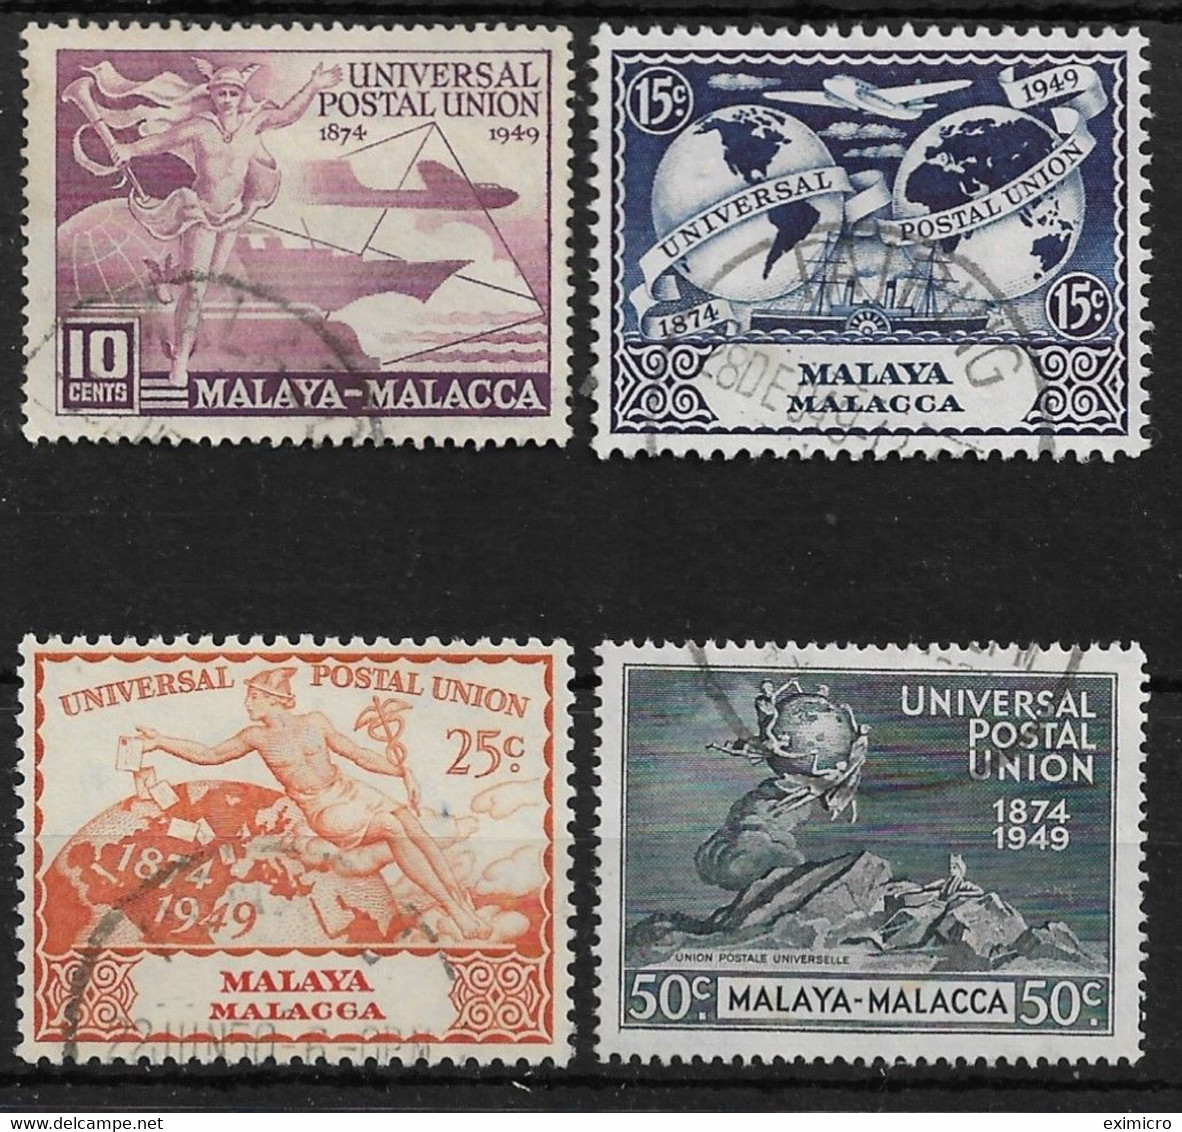 MALAYA - MALACCA 1949 UPU SET FINE USED Cat £19 - Malacca